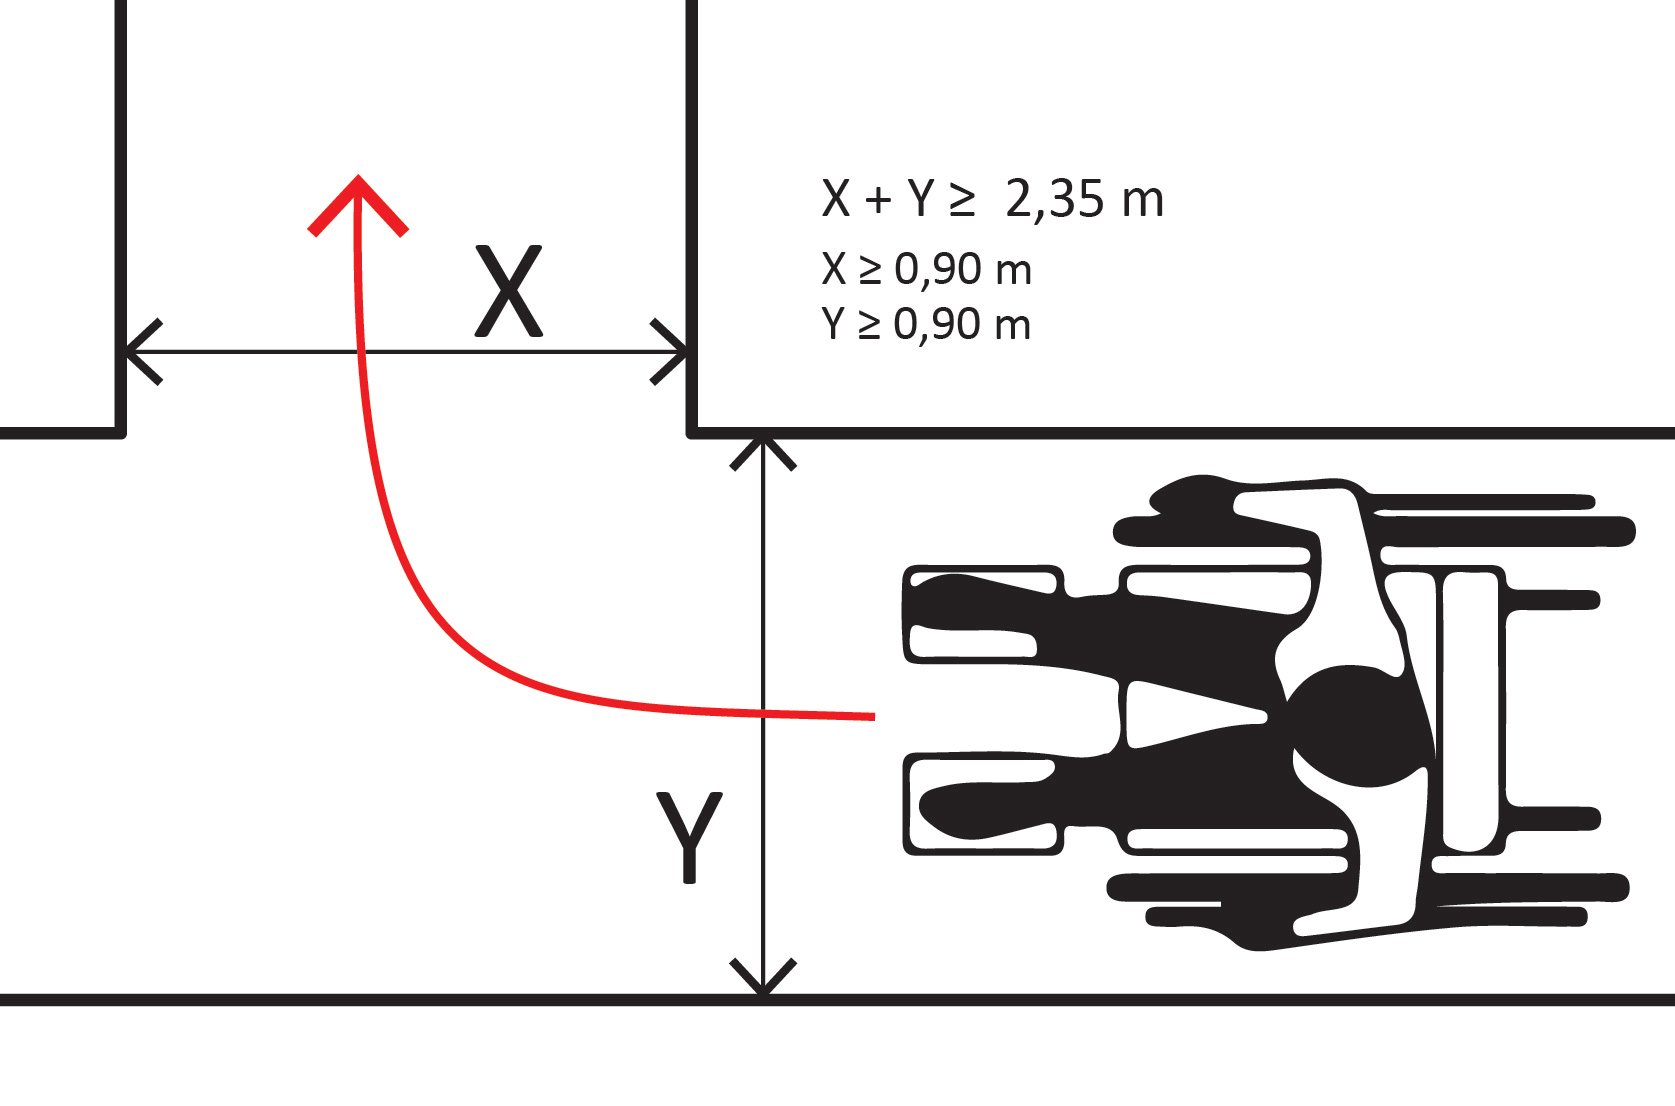 Illustratie die weergeeft dat de som van de vrije breedten (X + Y) dient minimaal 2,35 m te zijn. Waarbij X groter dan 0,9 m en Y groter dan 0,9 m.